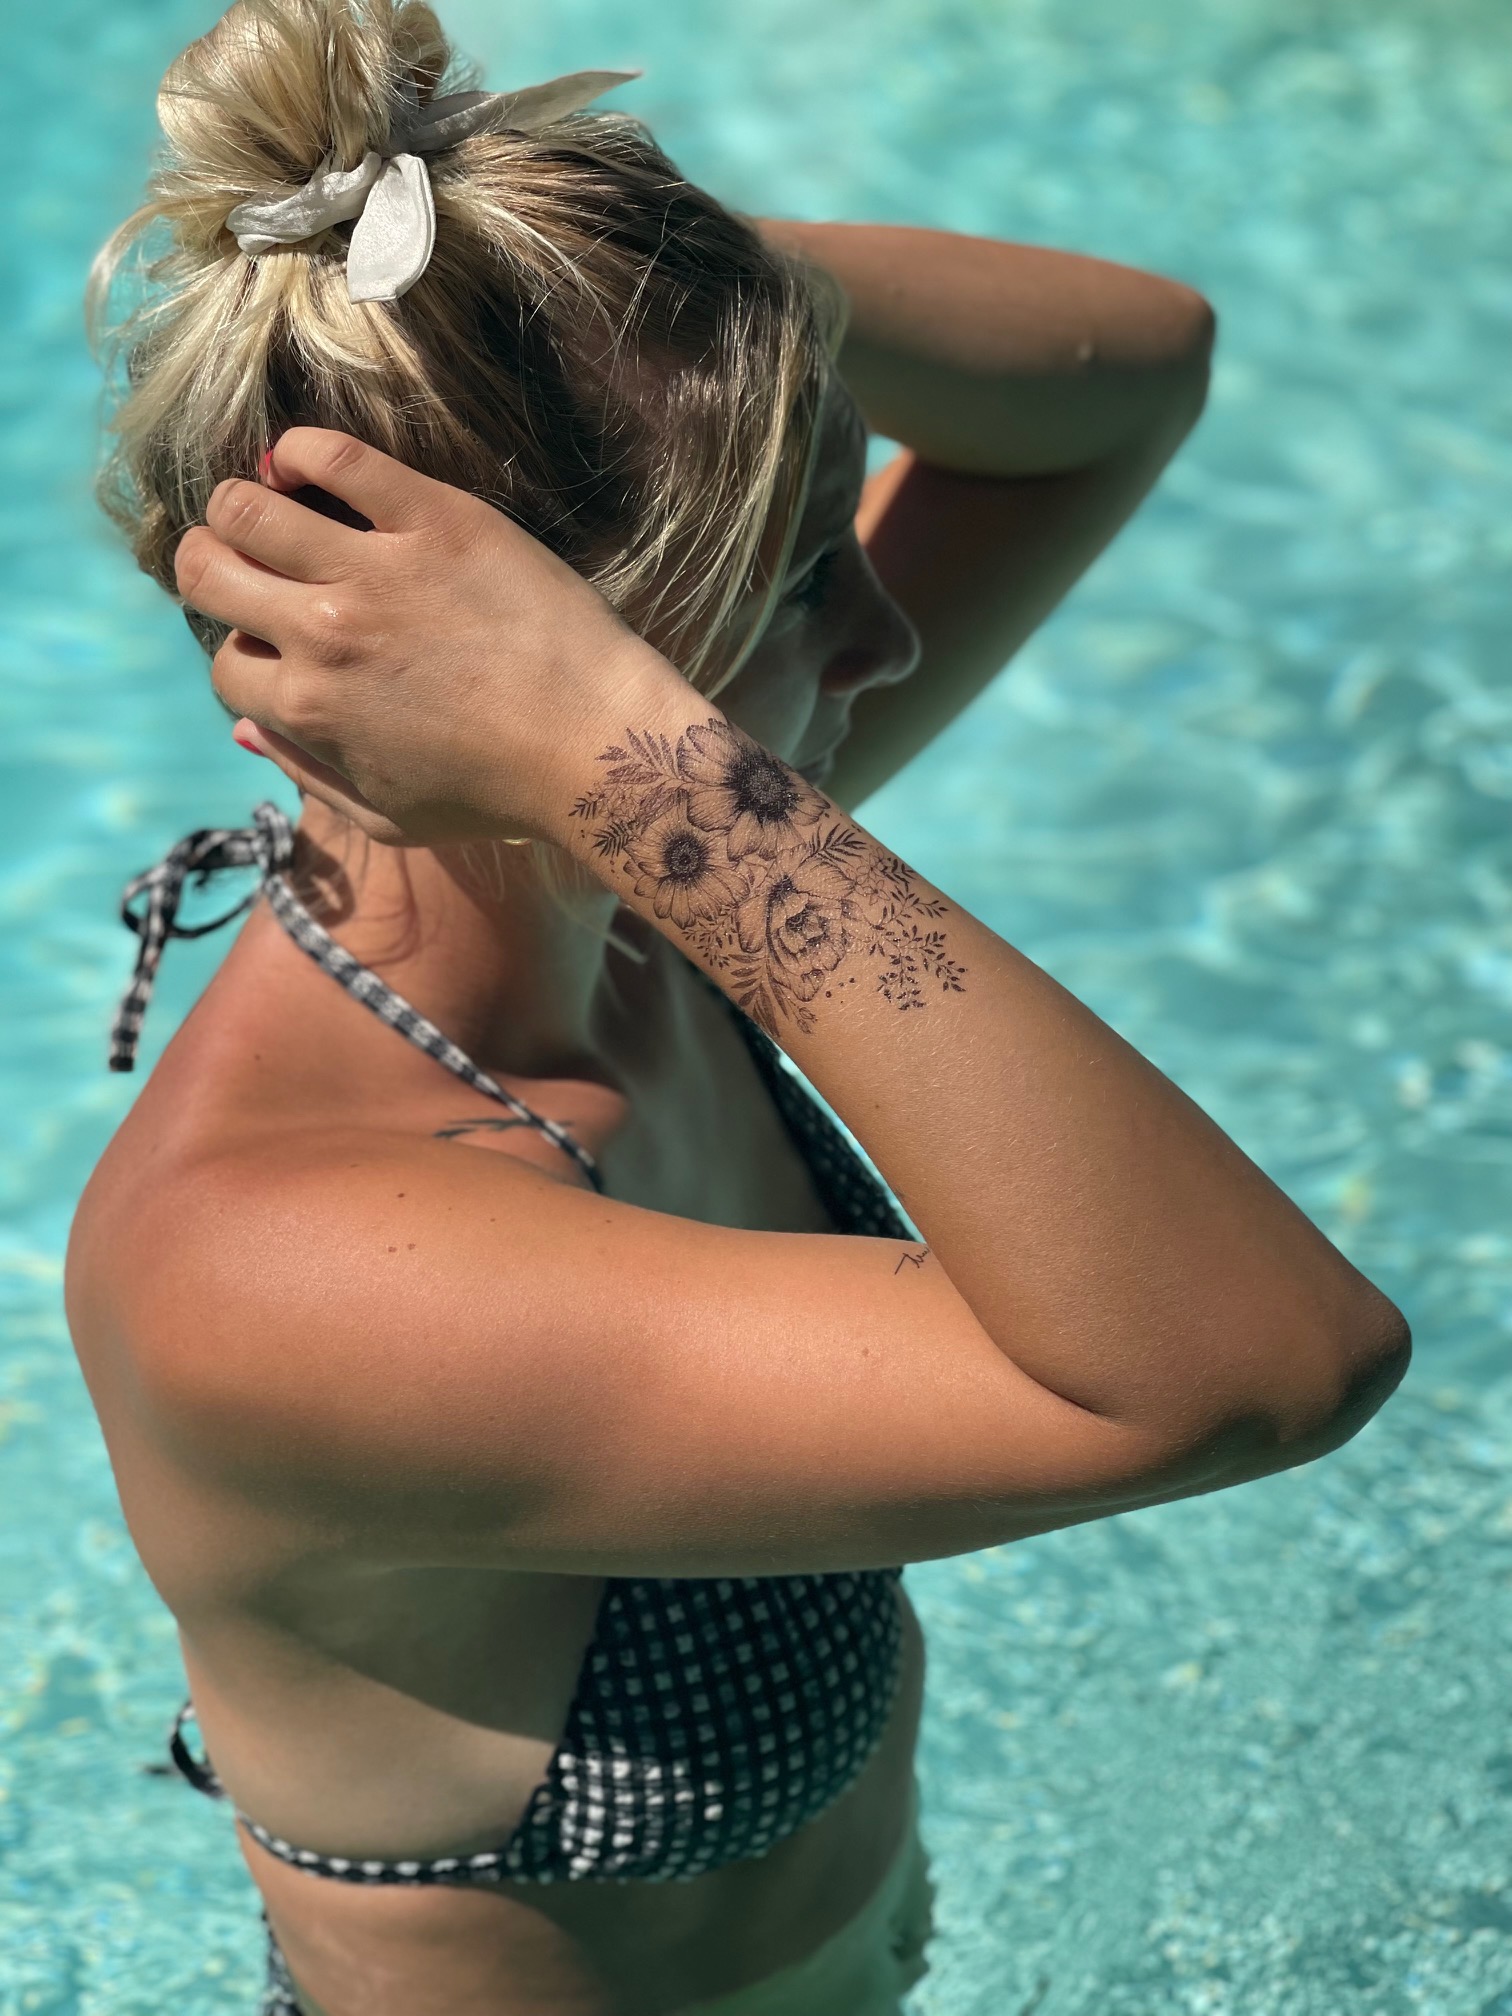 Nos tattoos éphémères à la piscine